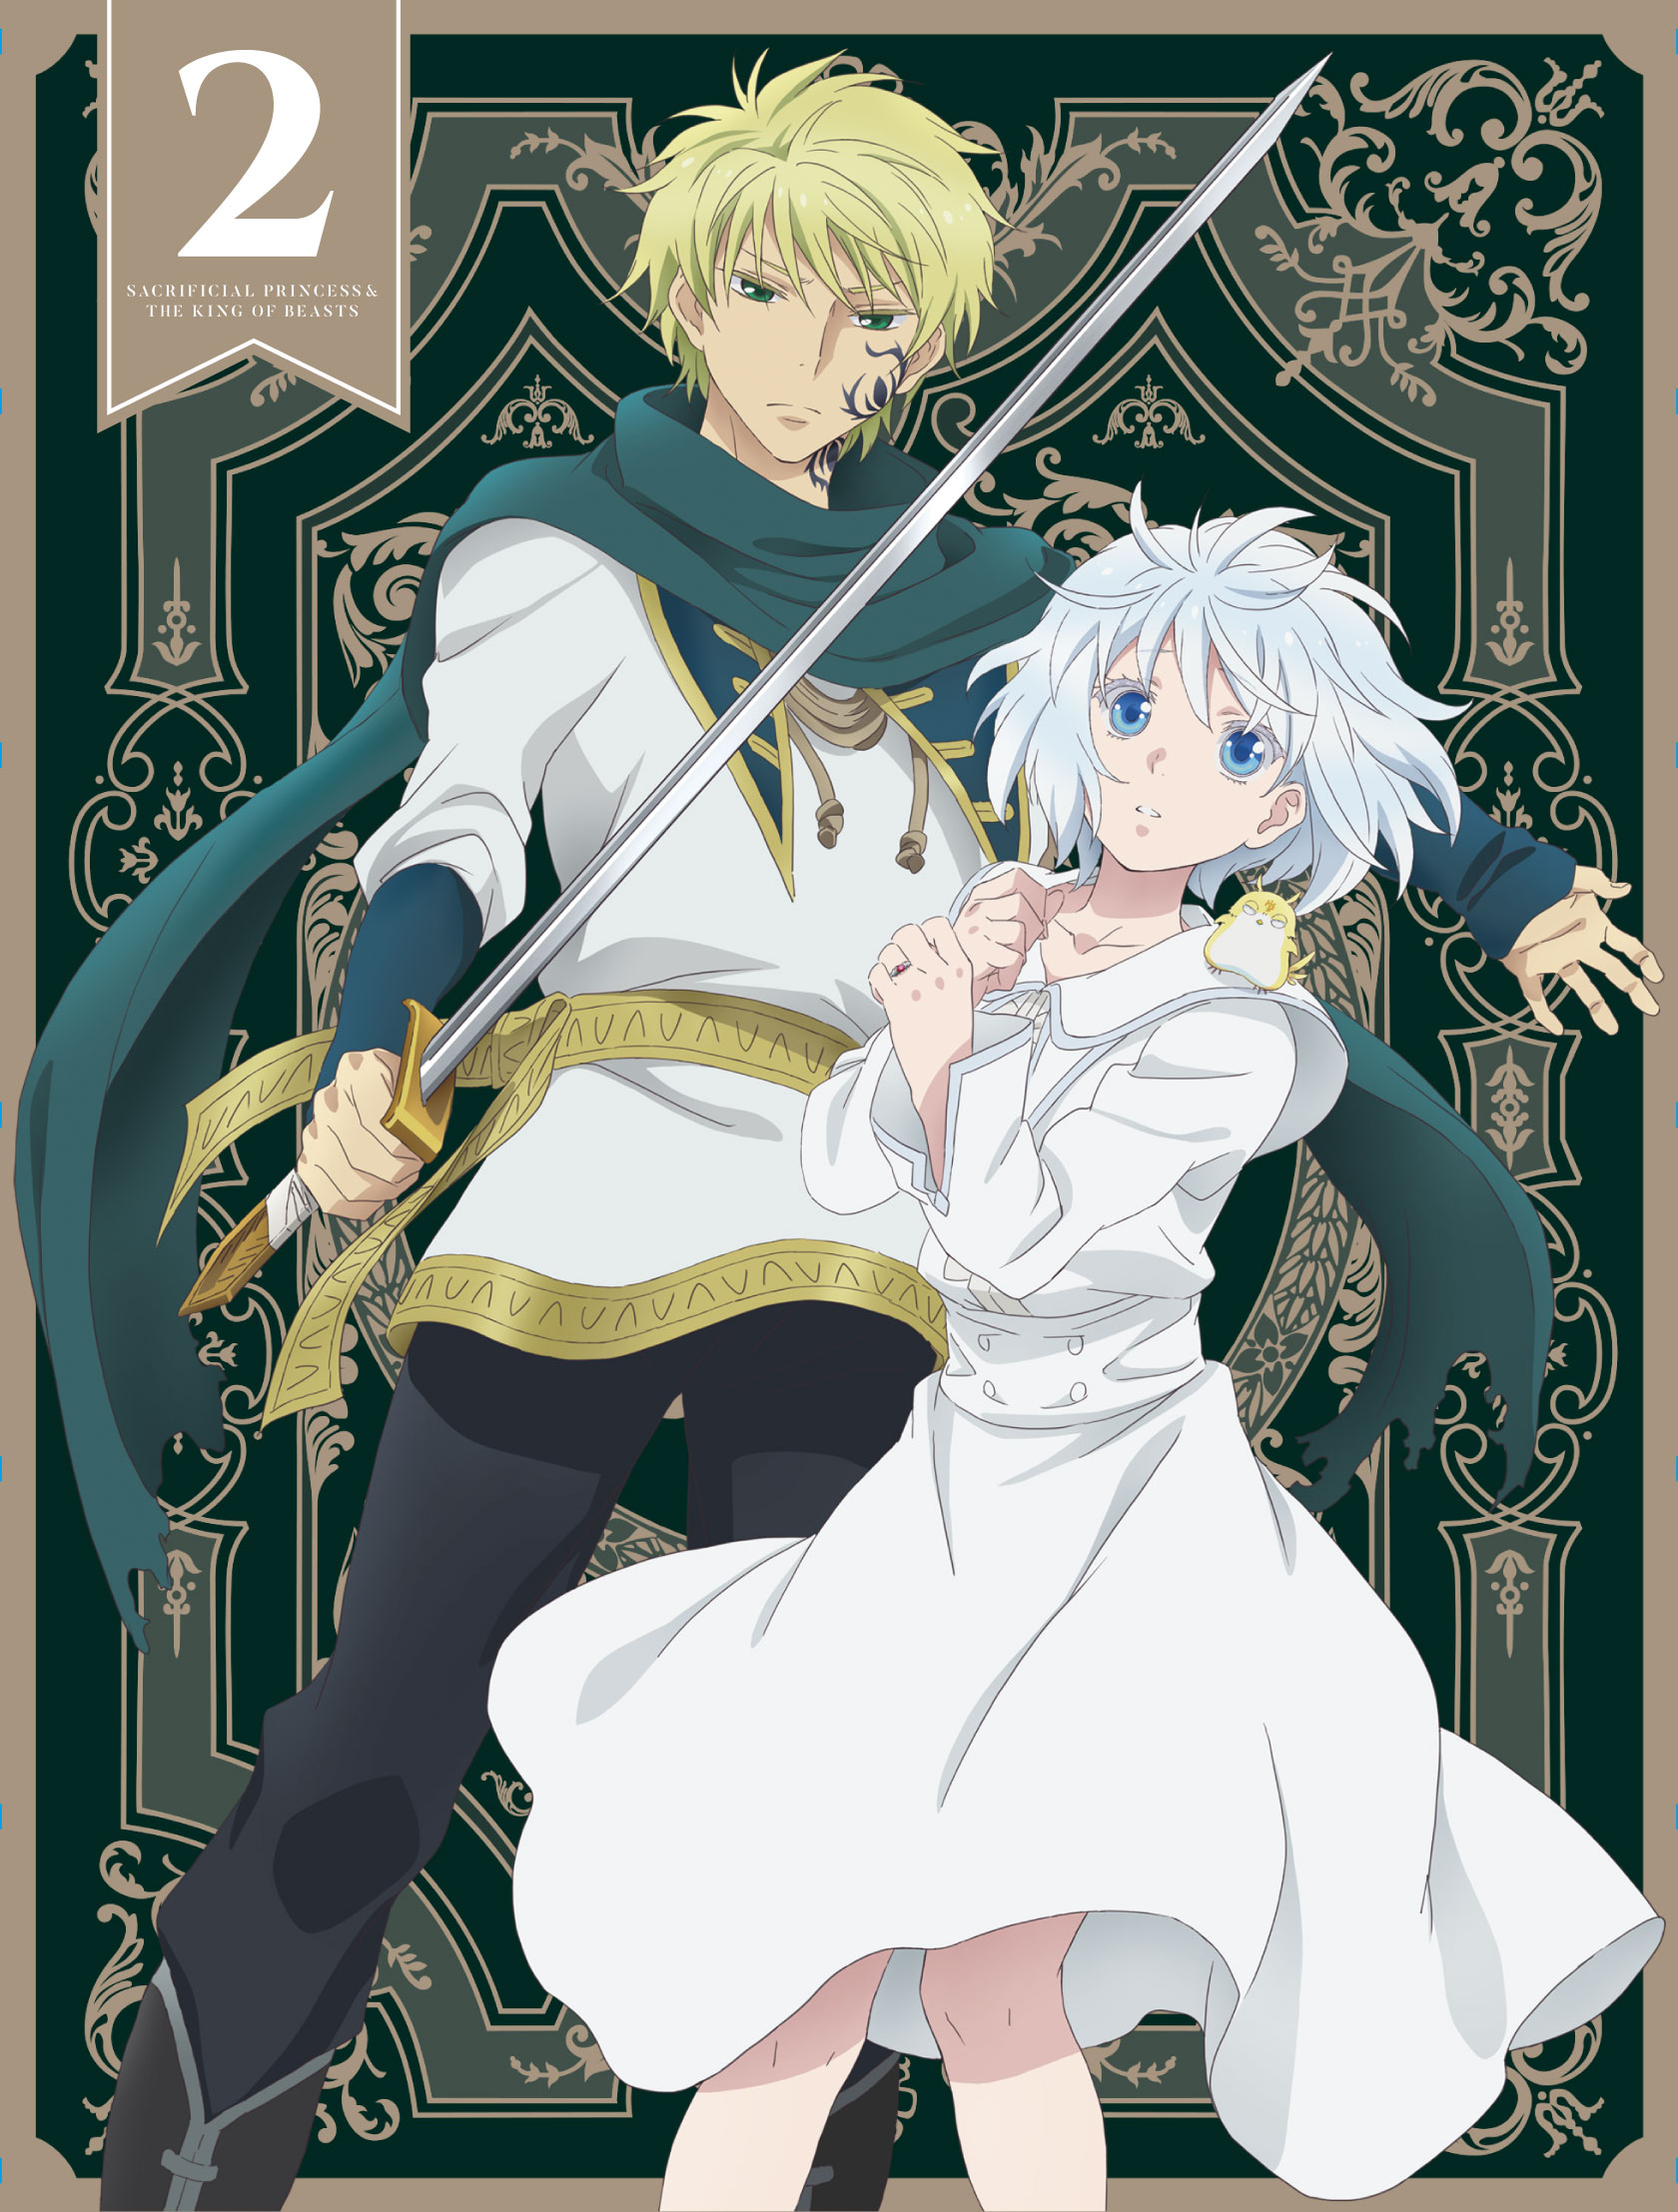 Sacrificial Princess and the King of Beasts (Anime) –